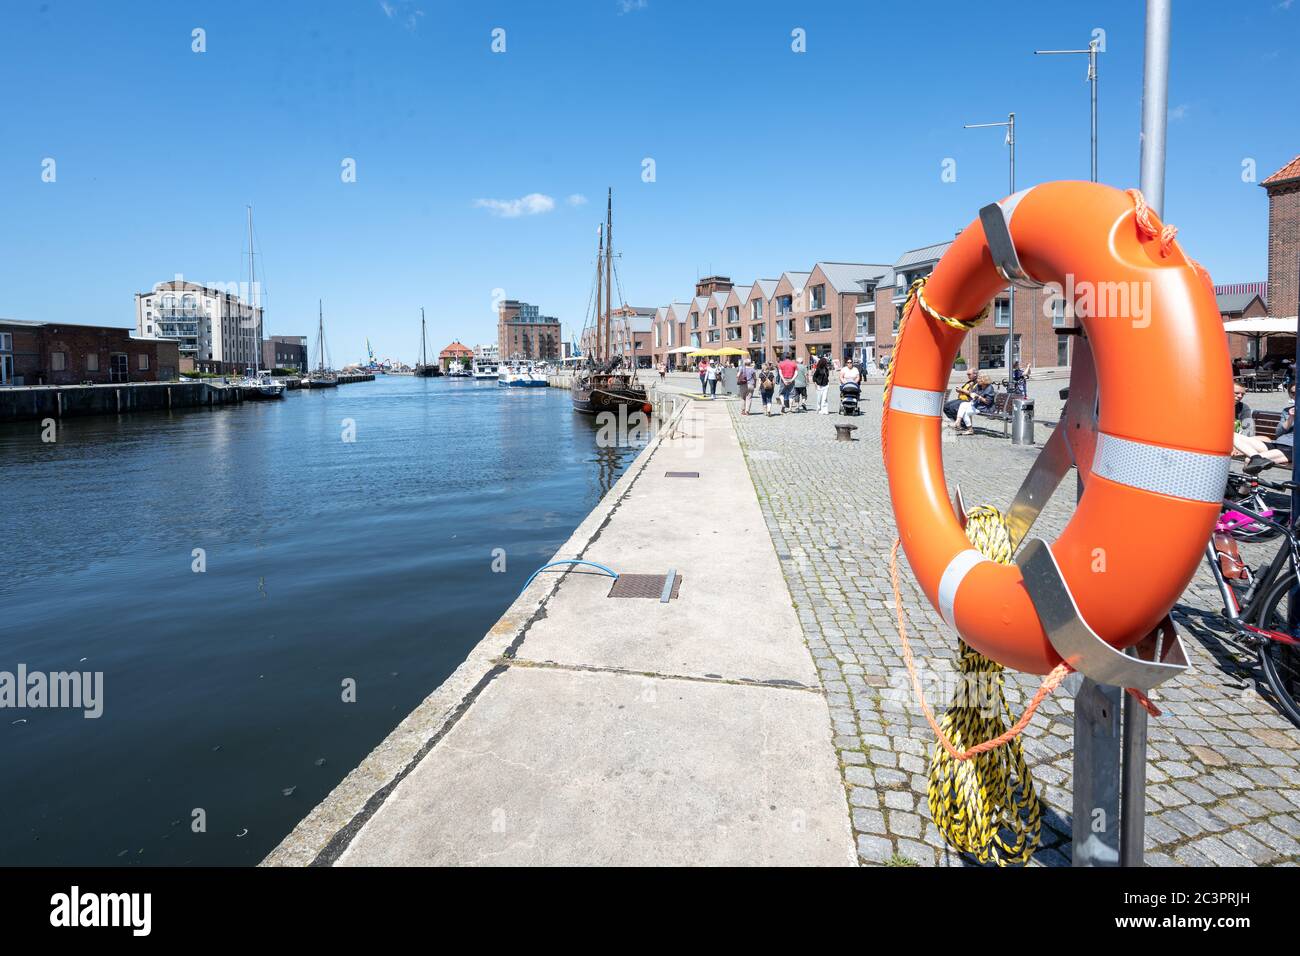 Wismar, Germania, 15 giugno 2020: Anello di soccorso presso lo storico porto vecchio di Wismar, per i turisti uno dei luoghi più attraenti del cit anseatico Foto Stock